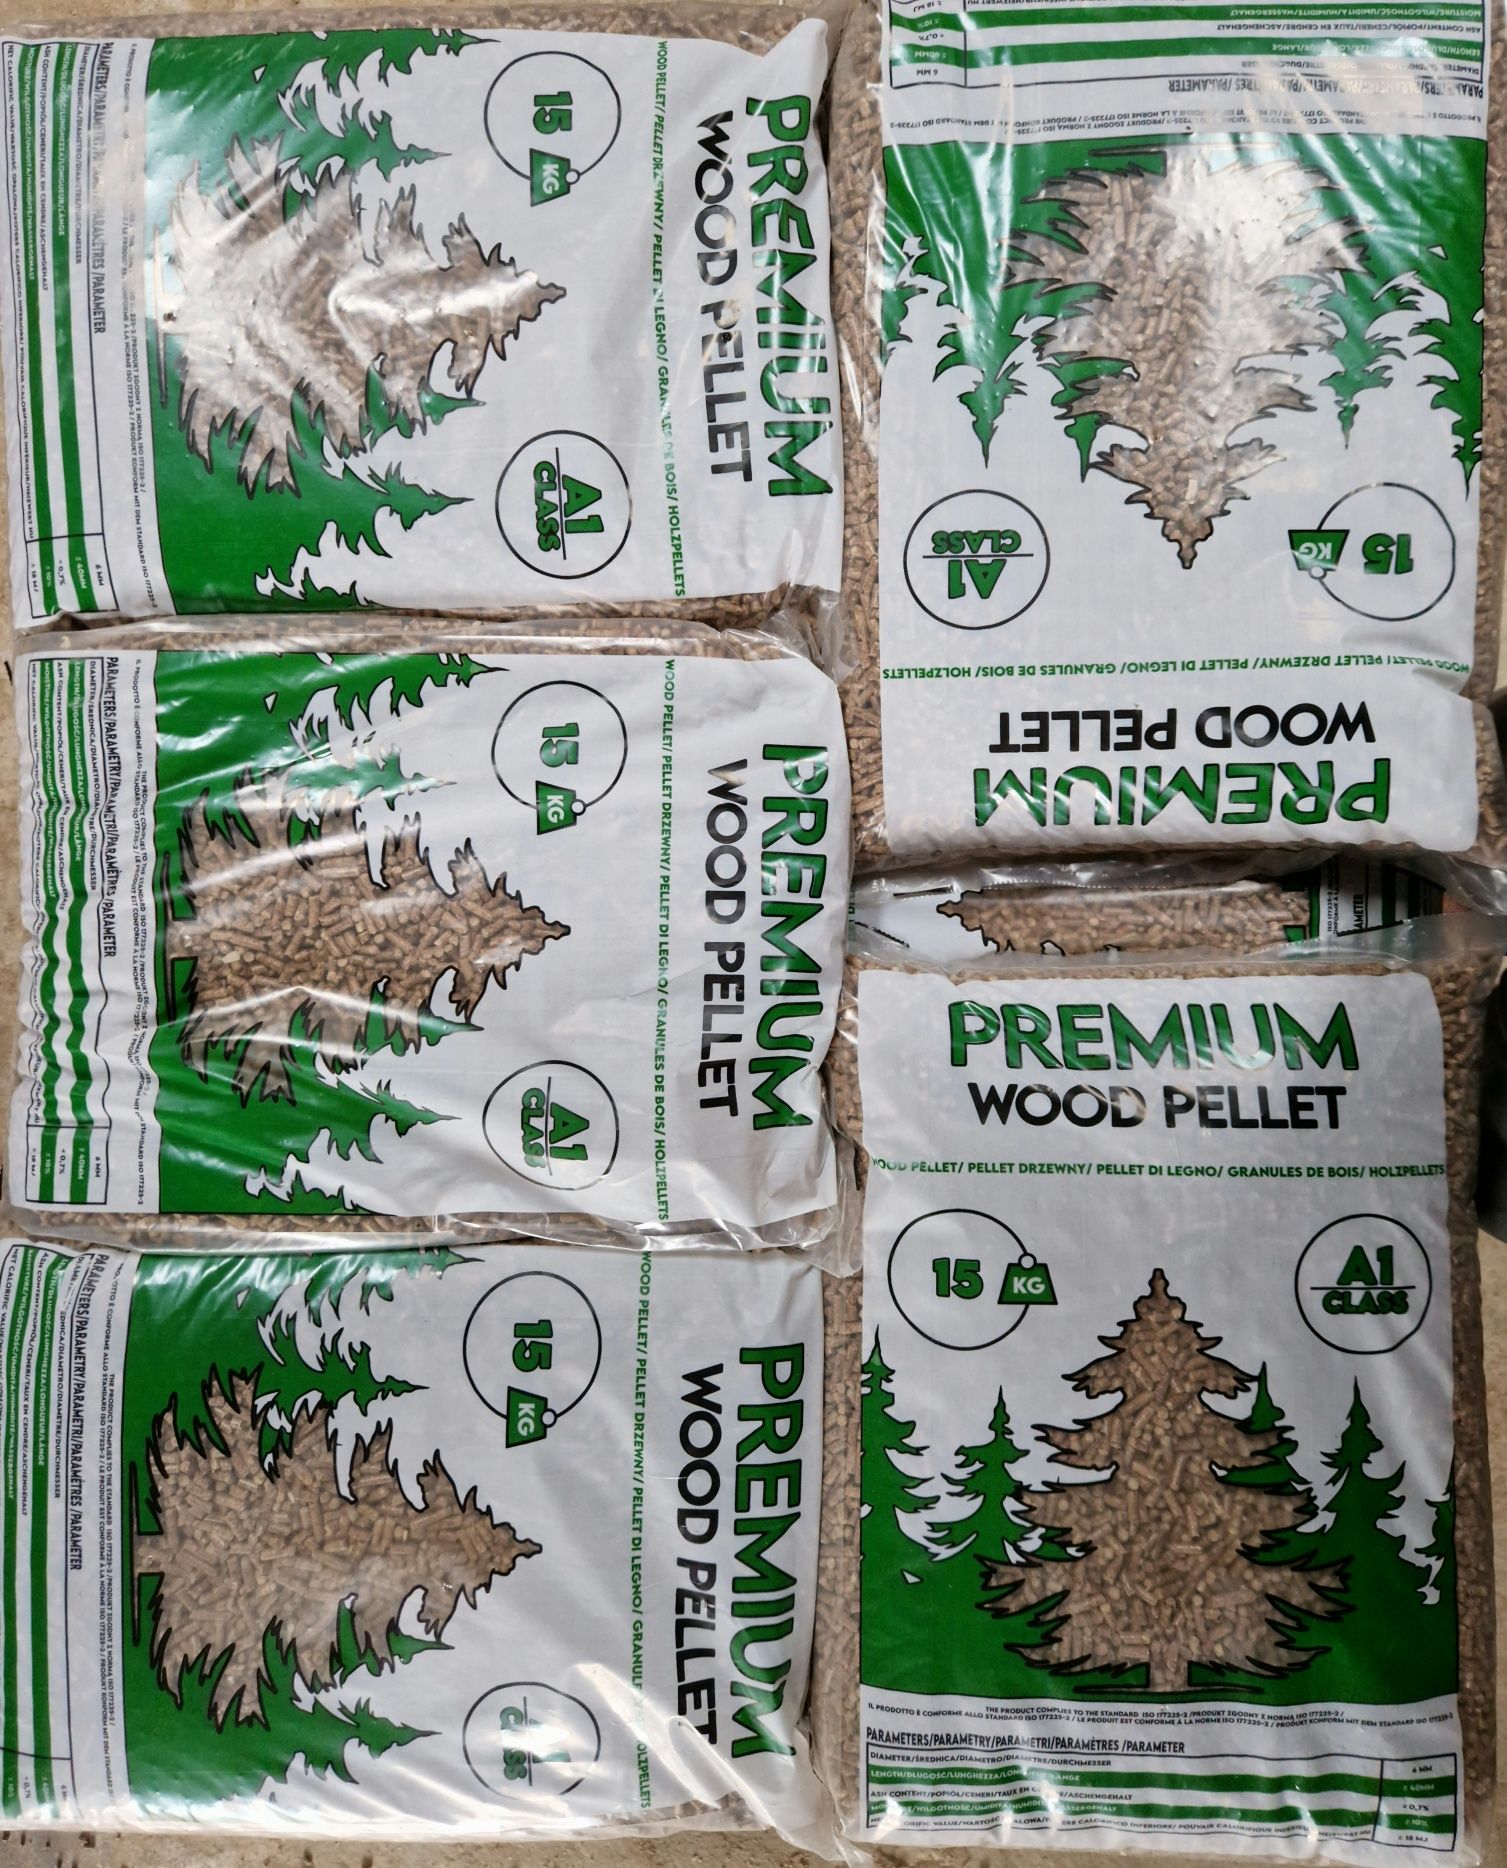 Pellet drzewny Premium A1 WOOD 6mm nie olczyk igła lava